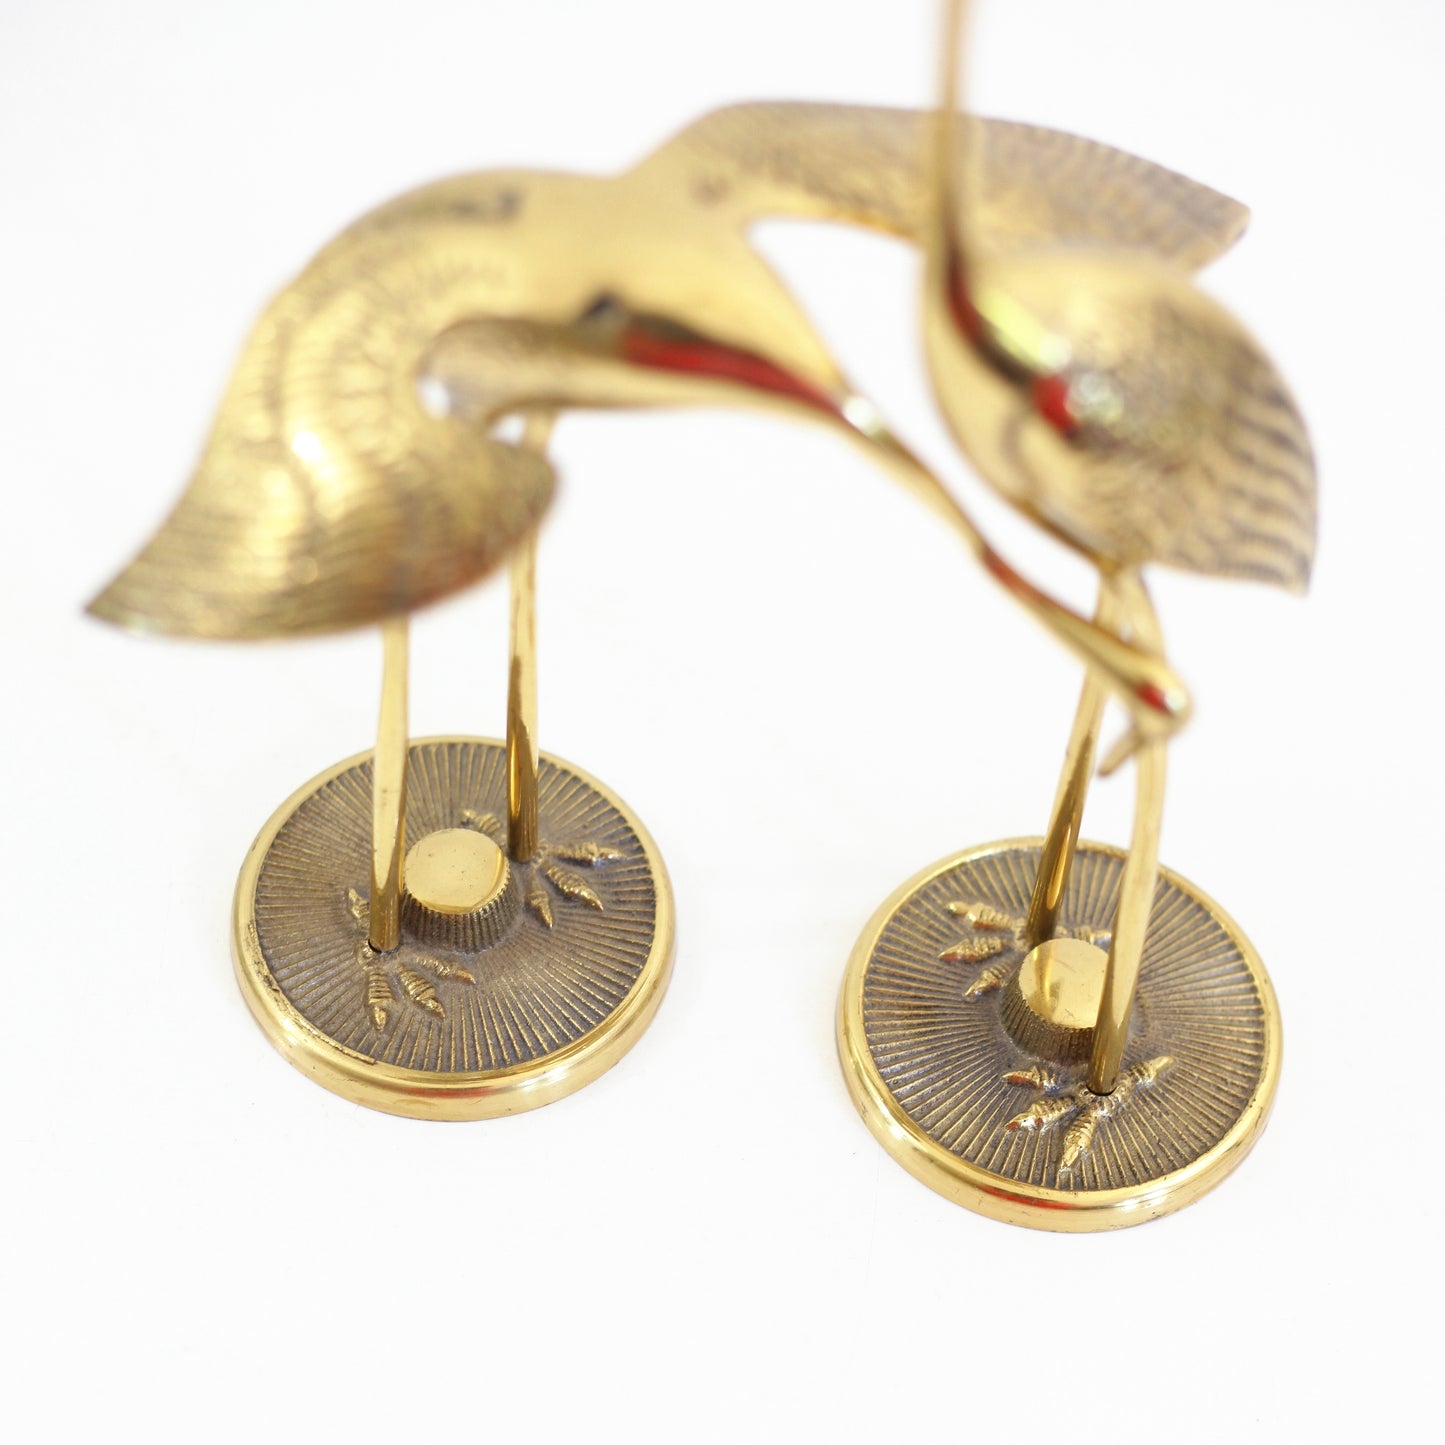 SOLD - Mid Century Modern Brass Cranes